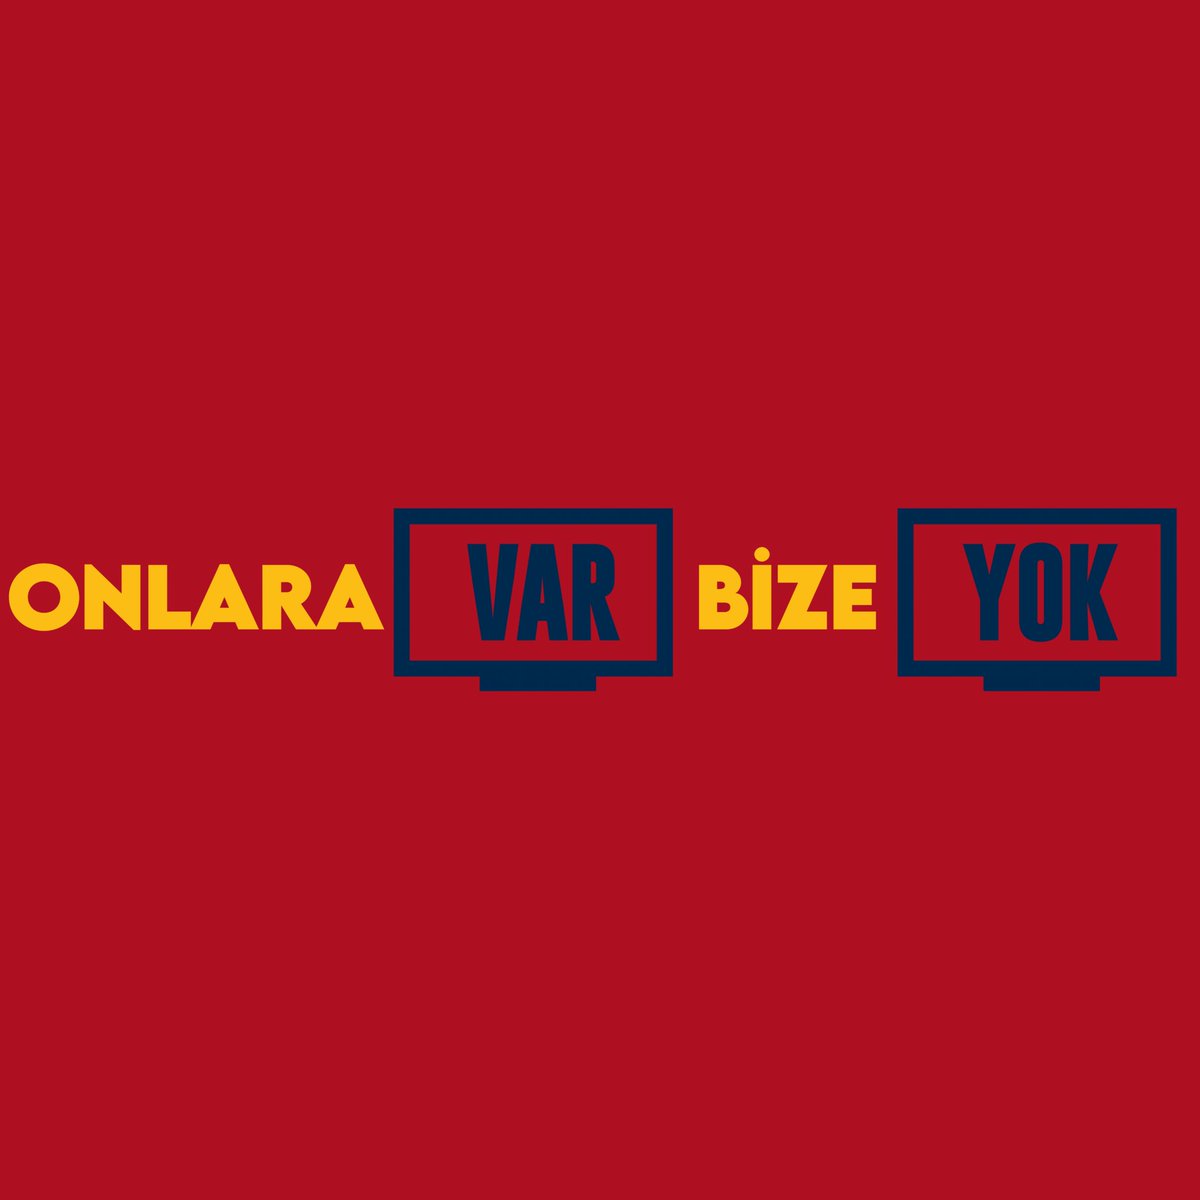 Onlara VAR✅
Bize YOK❌
#FBvKYS #Kayserispor